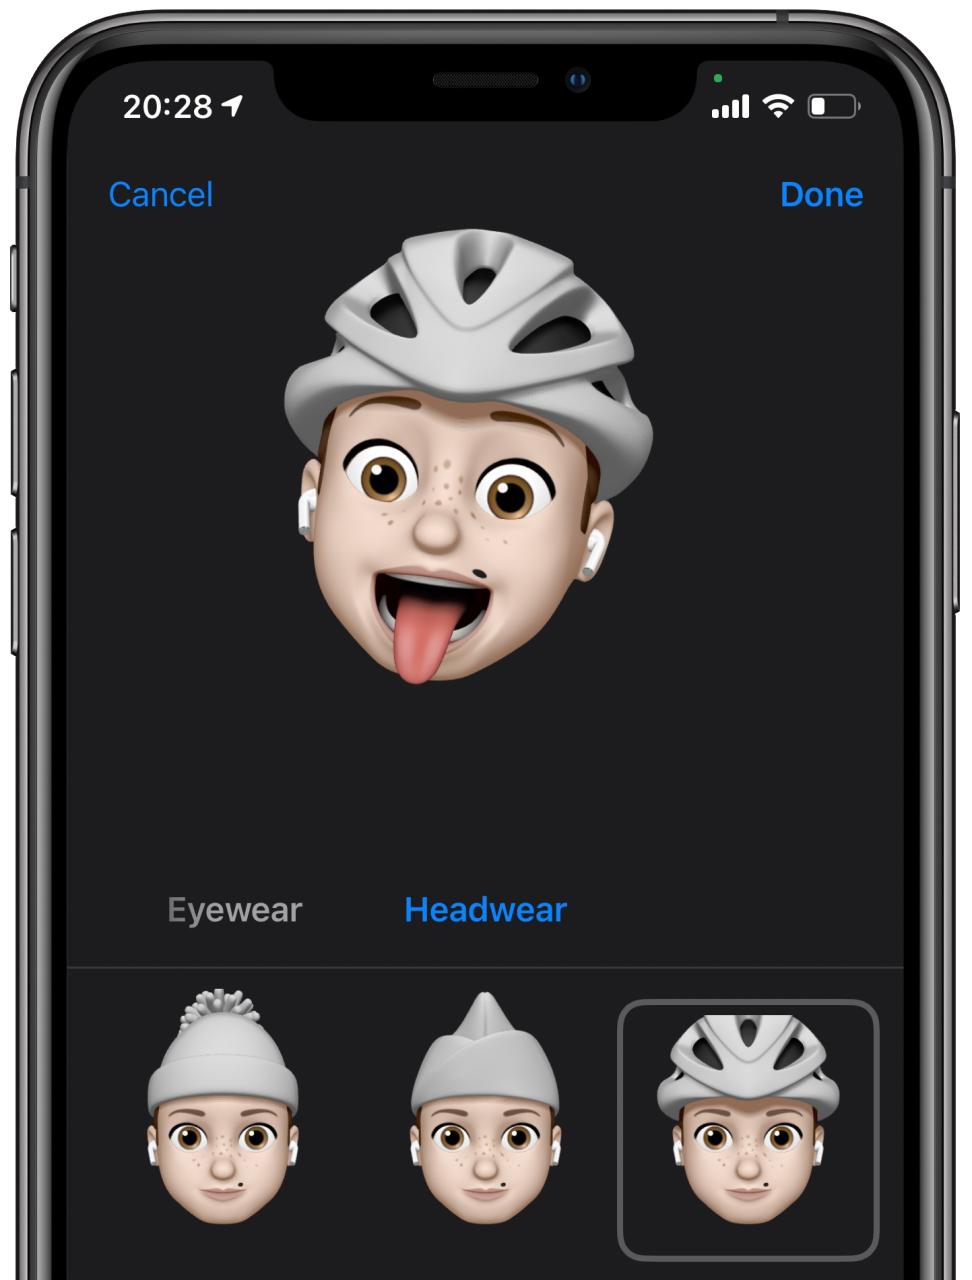 Direcciones de ciclismo de Apple Maps: personalización de Memoji con un casco de ciclista